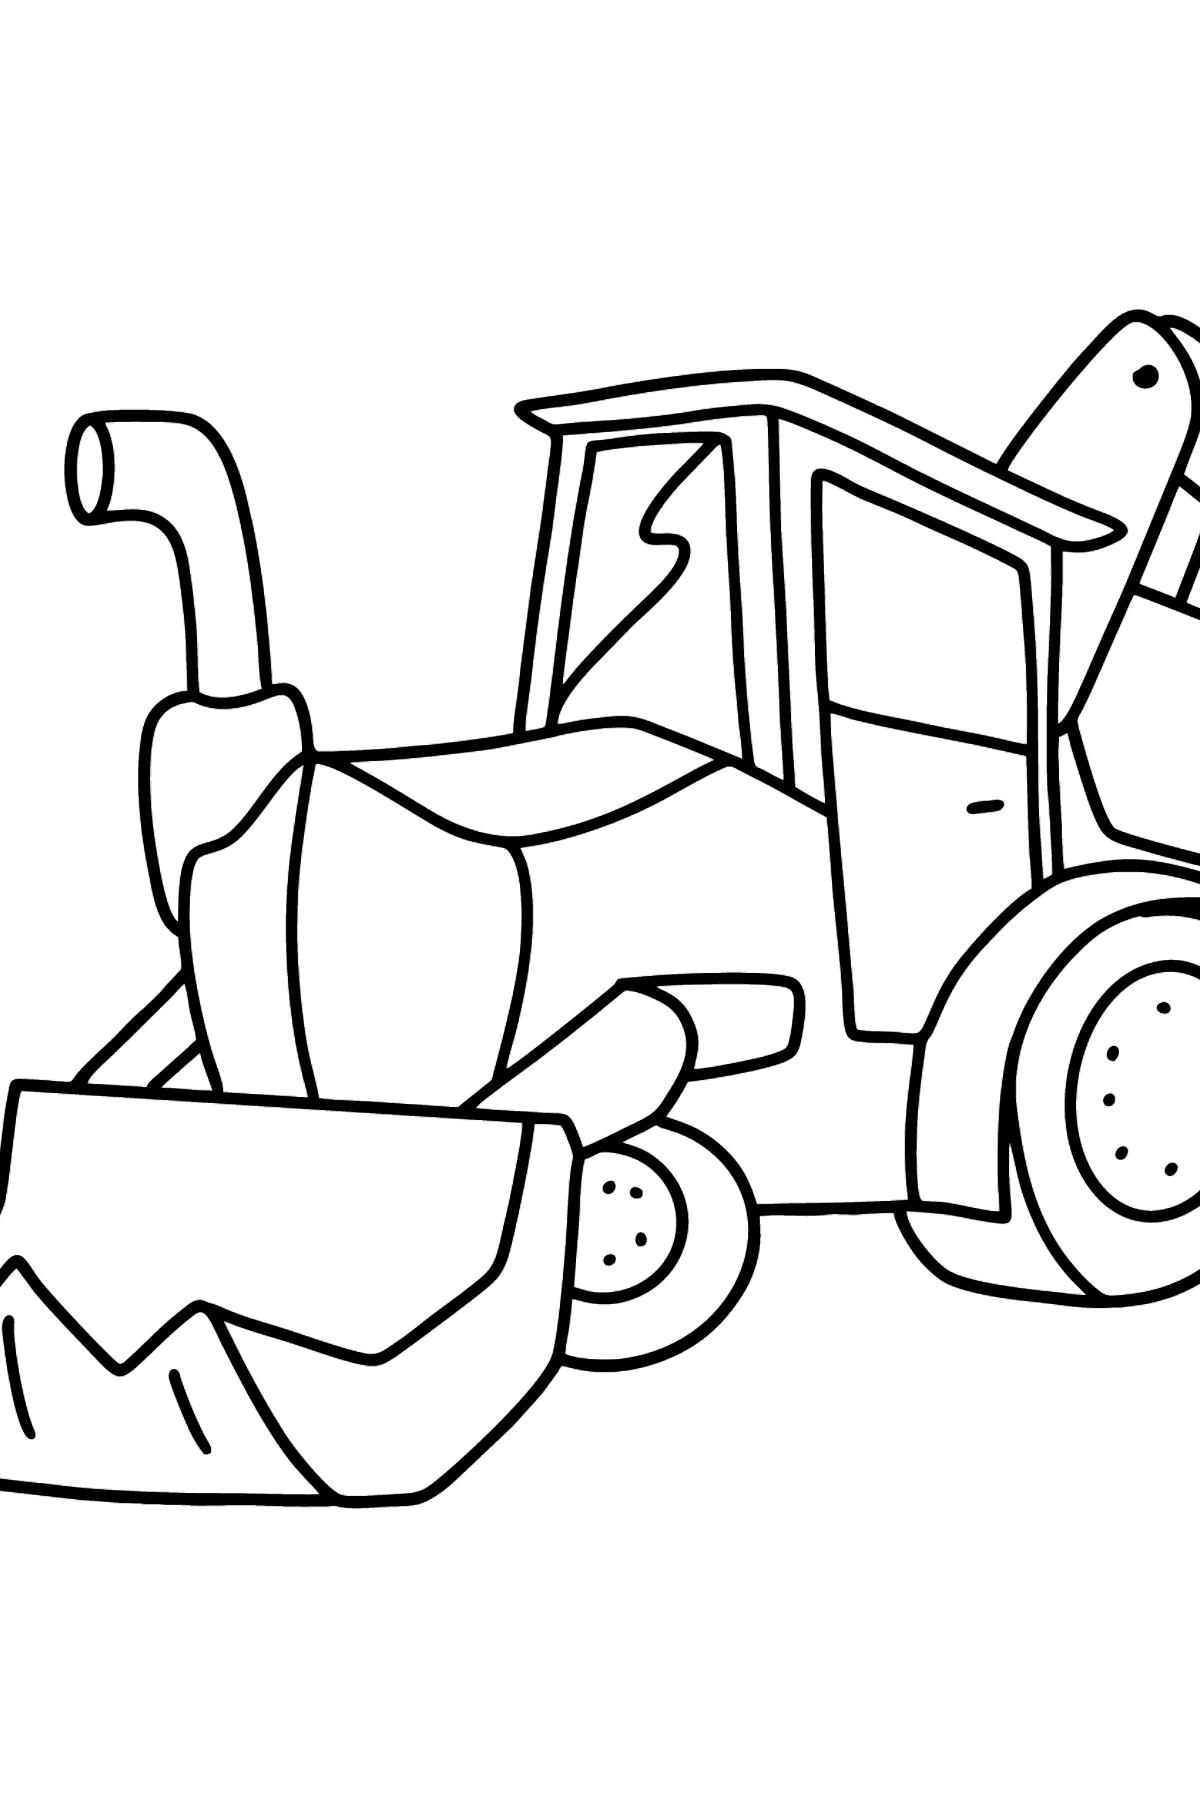 Kolorowanka Traktor z dwoma wiadrami - Kolorowanki dla dzieci